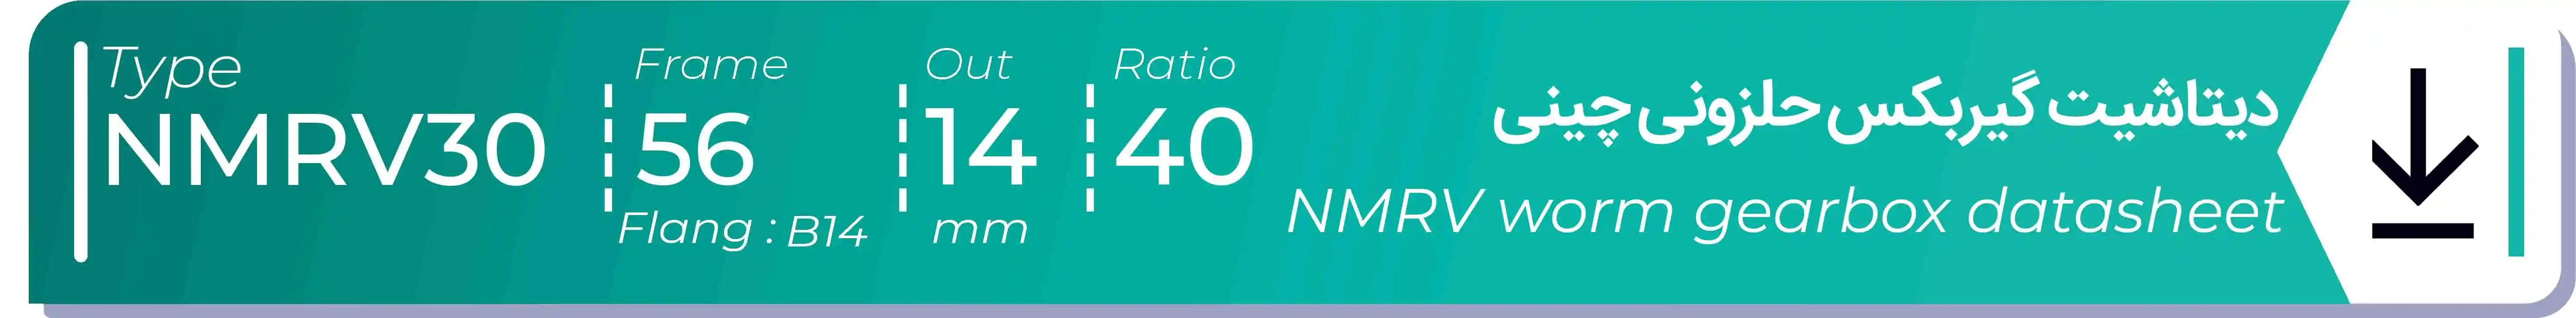  دیتاشیت و مشخصات فنی گیربکس حلزونی چینی   NMRV30  -  با خروجی 14- میلی متر و نسبت40